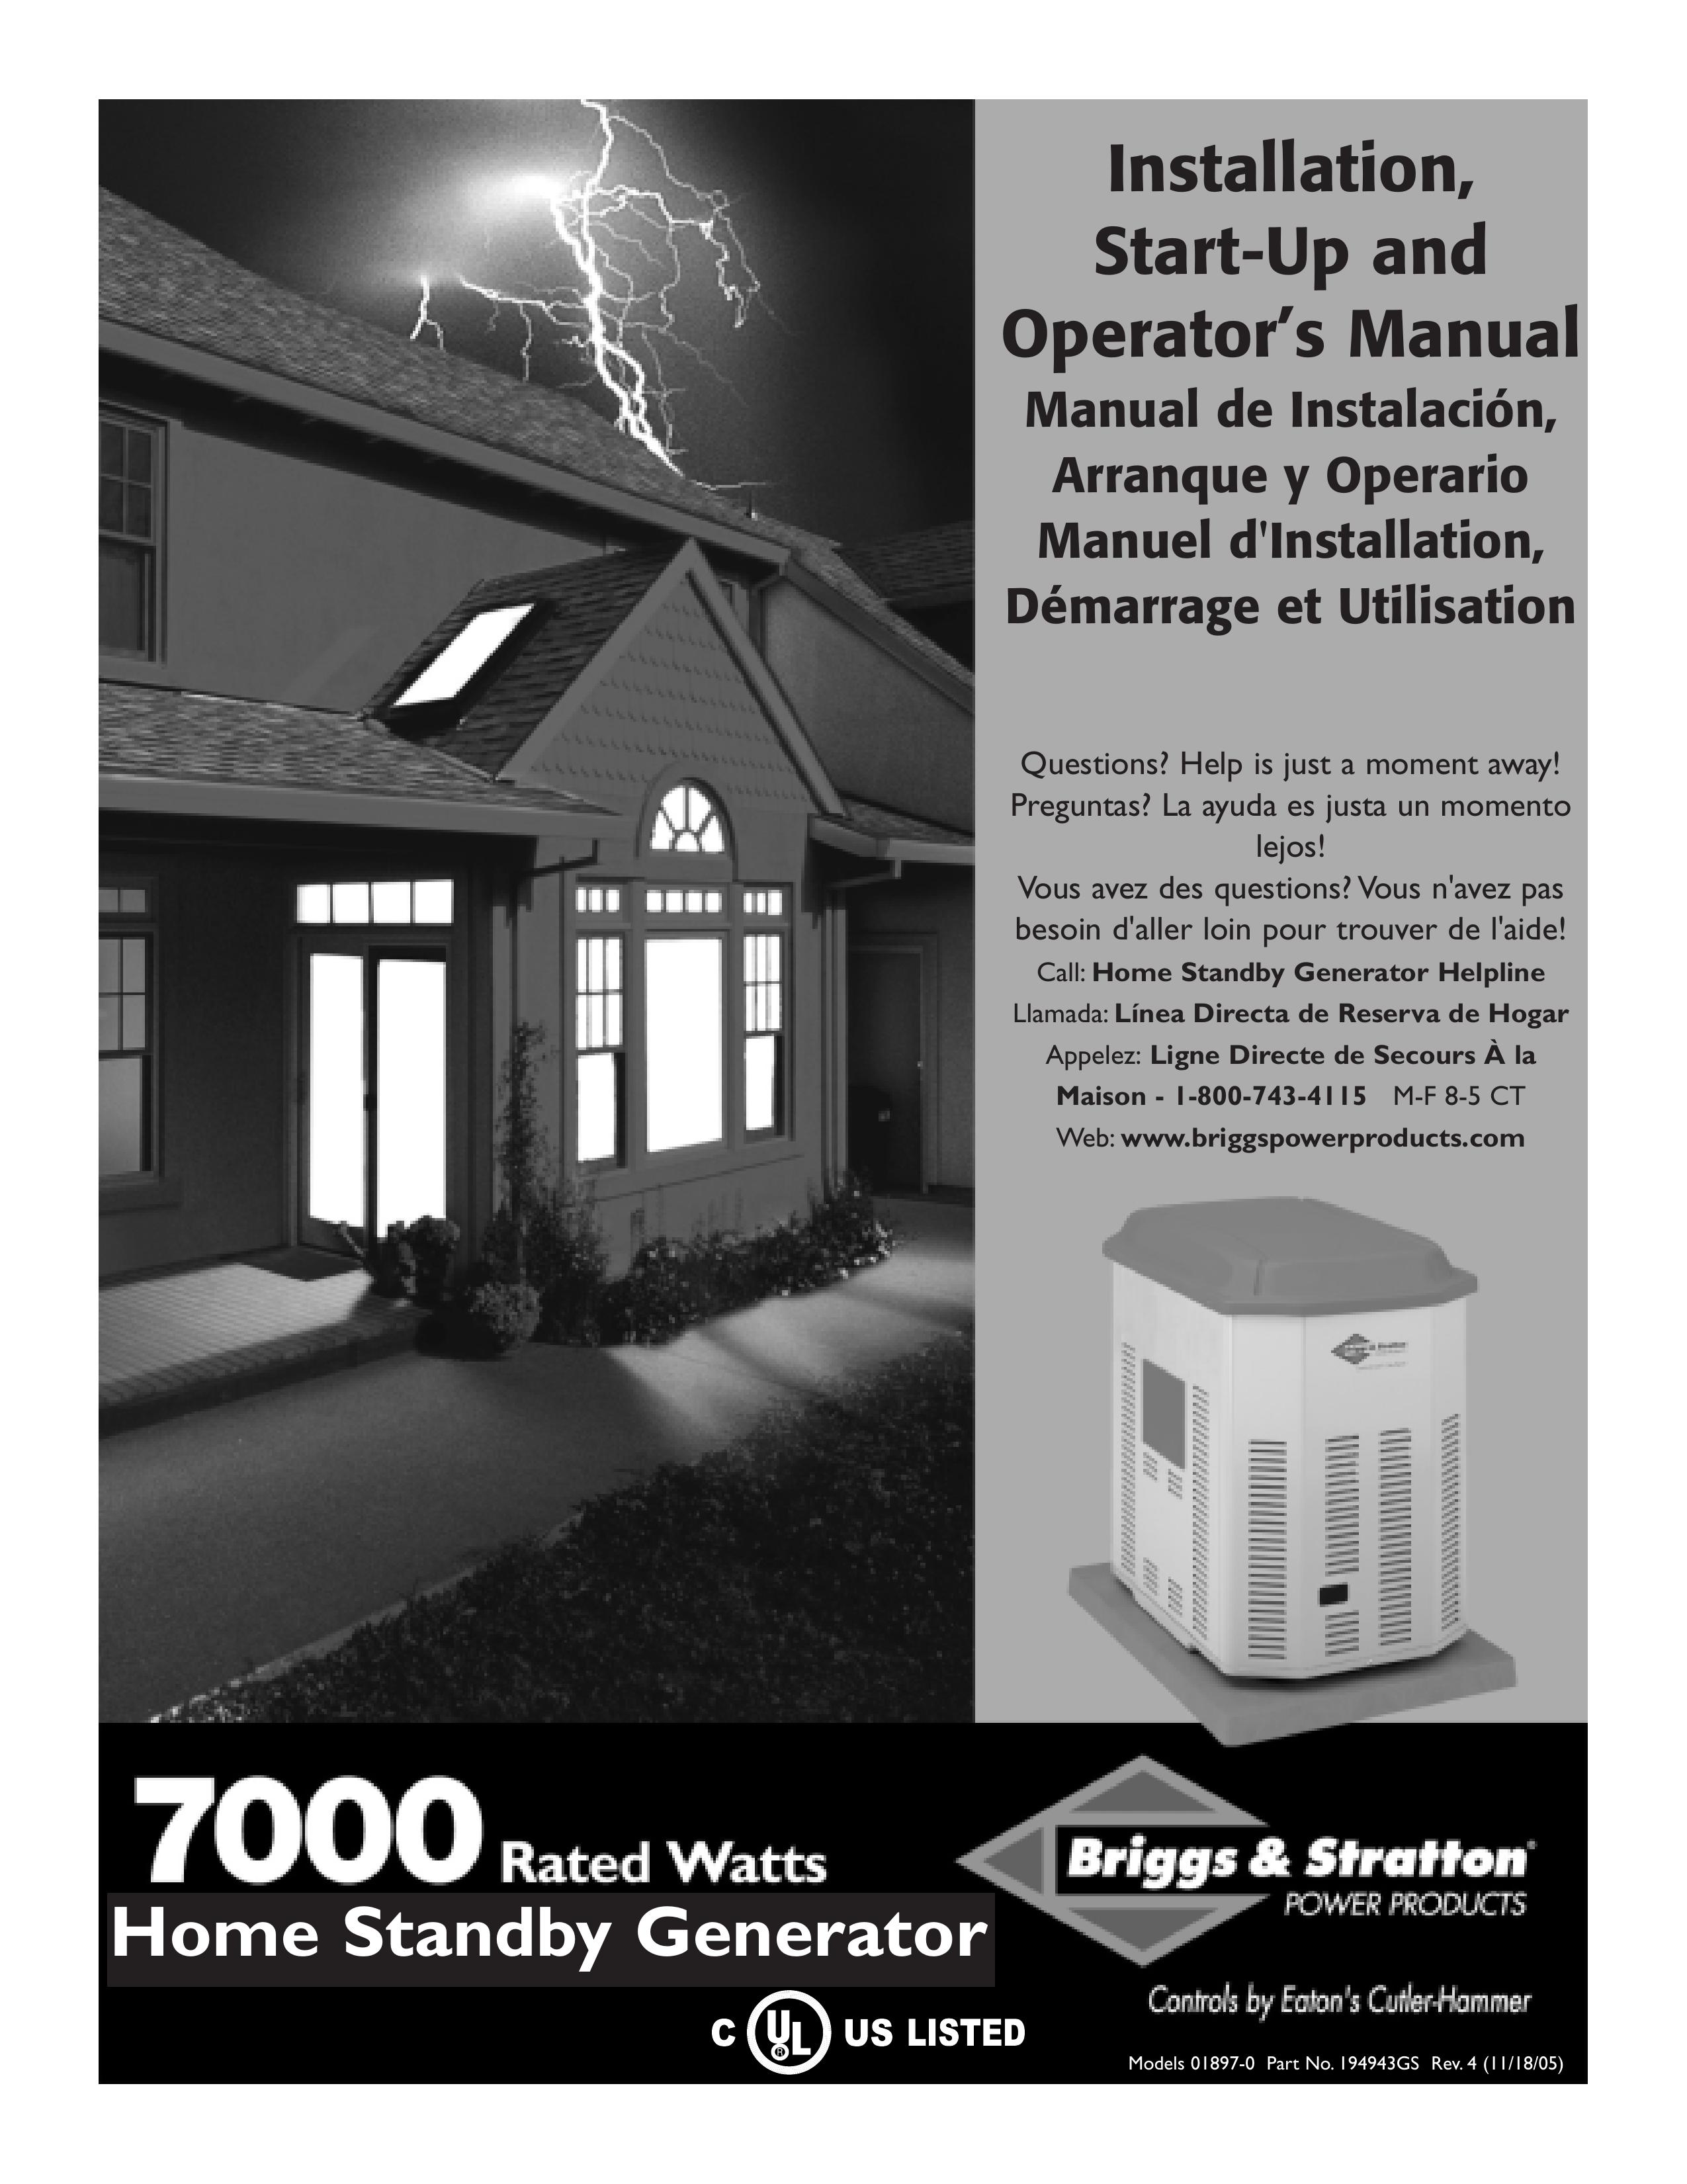 Briggs & Stratton 01897-0 Portable Generator User Manual